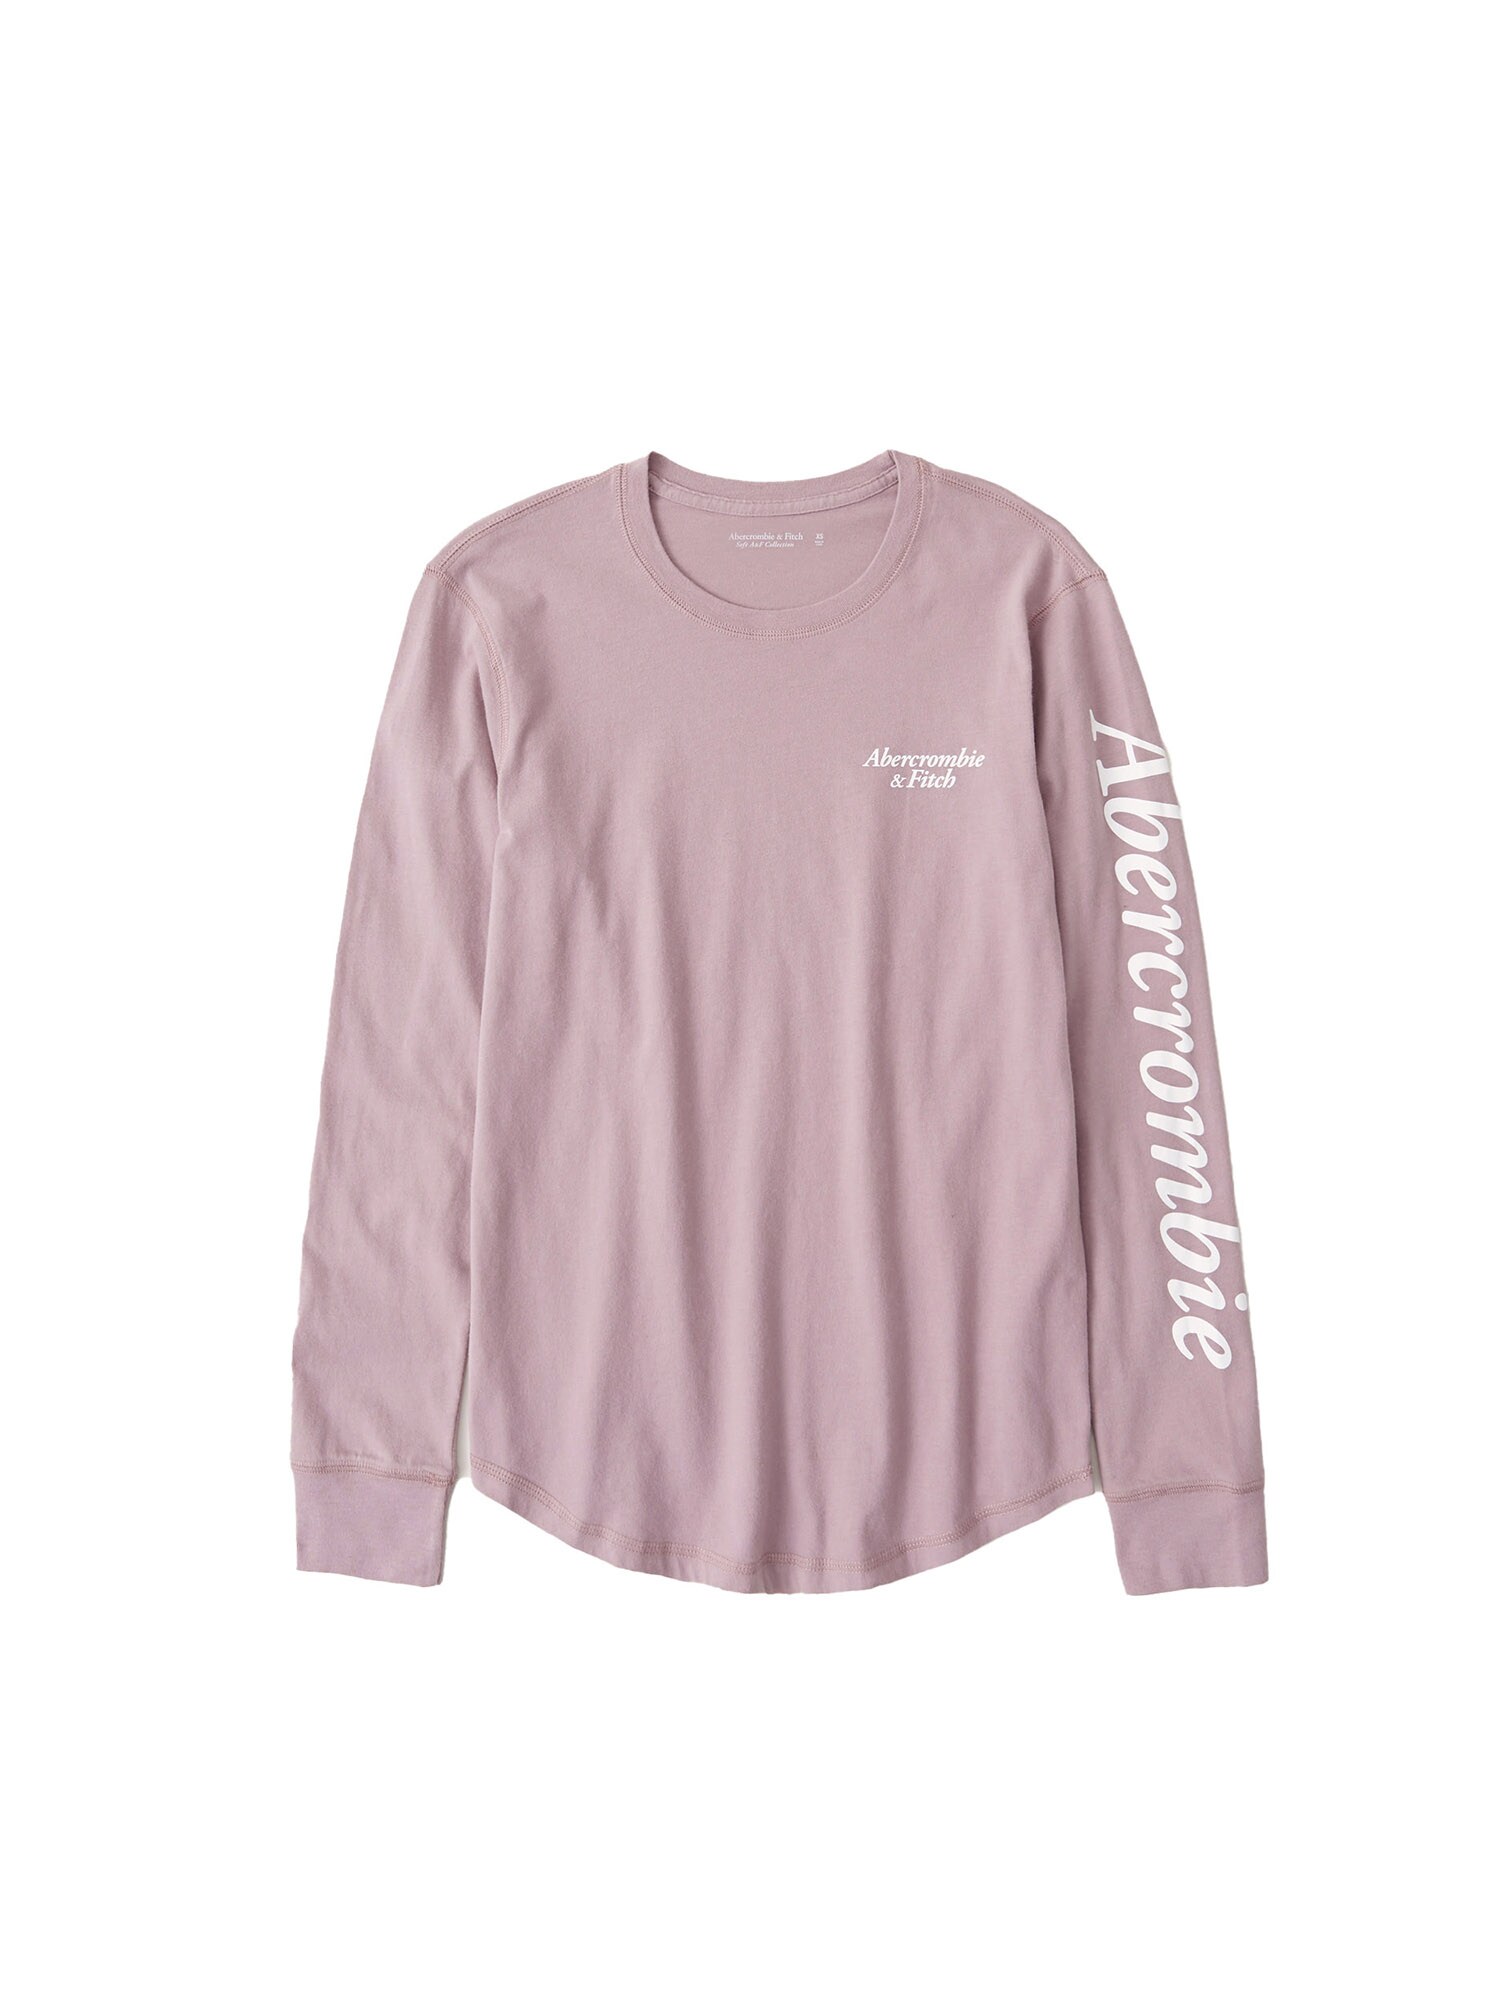 Abercrombie & Fitch Marškinėliai  ryškiai rožinė spalva / balta